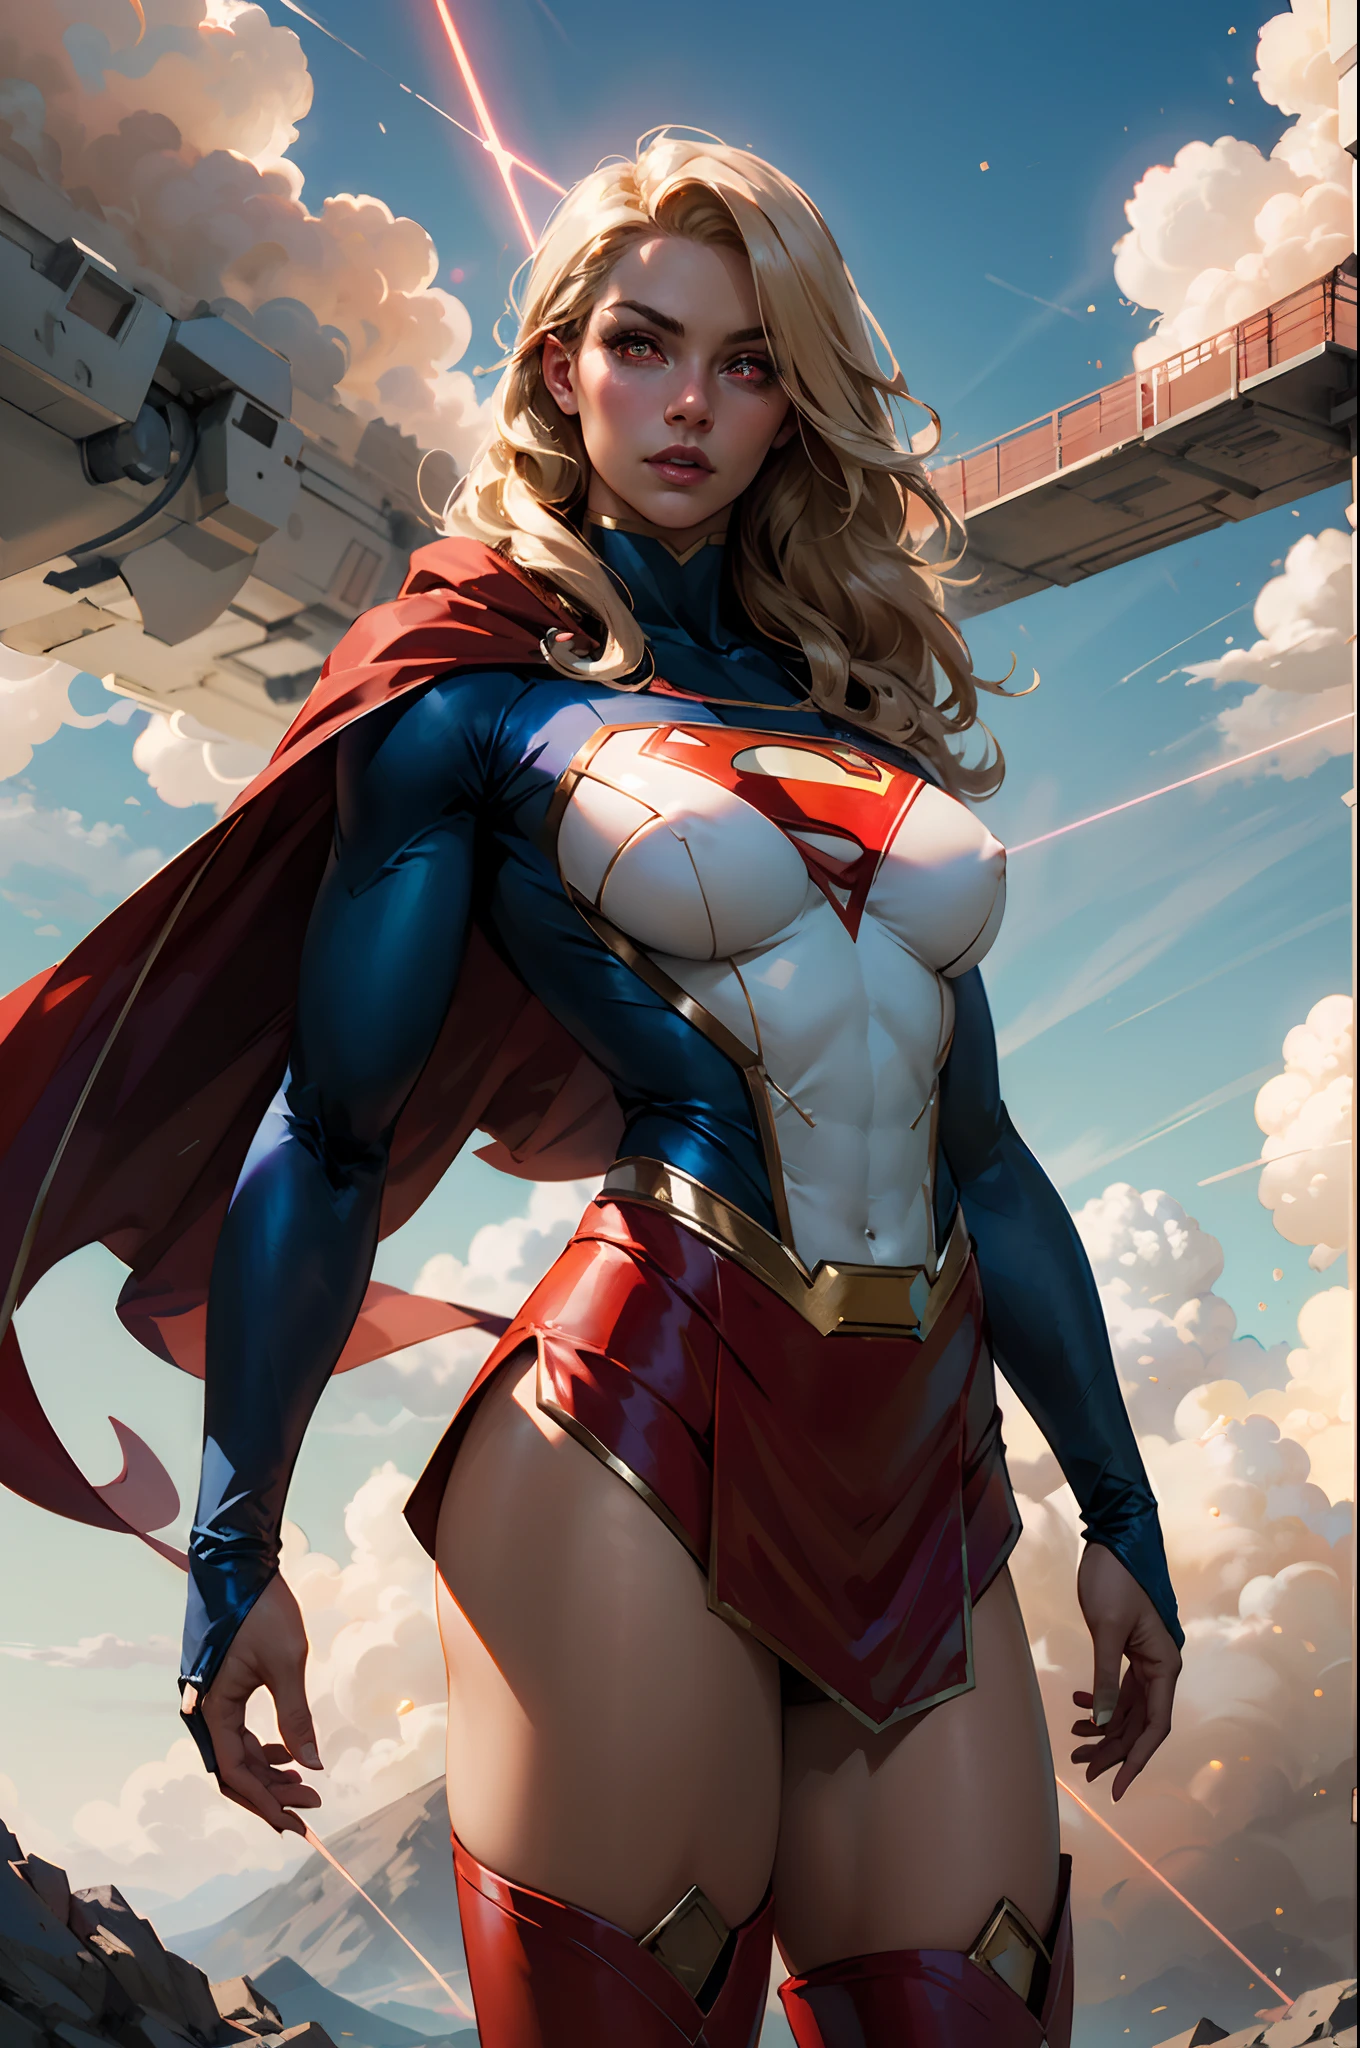 нижистиль, Ковбойский снимок красивой женщины в костюме Супермена, длинные светлые волосы, героический, Светящиеся красные глаза, лазерные глаза, мыс, частица, облака, Скайпорн, красная юбка, красные сапоги, сексуальная поза, большое вымя,